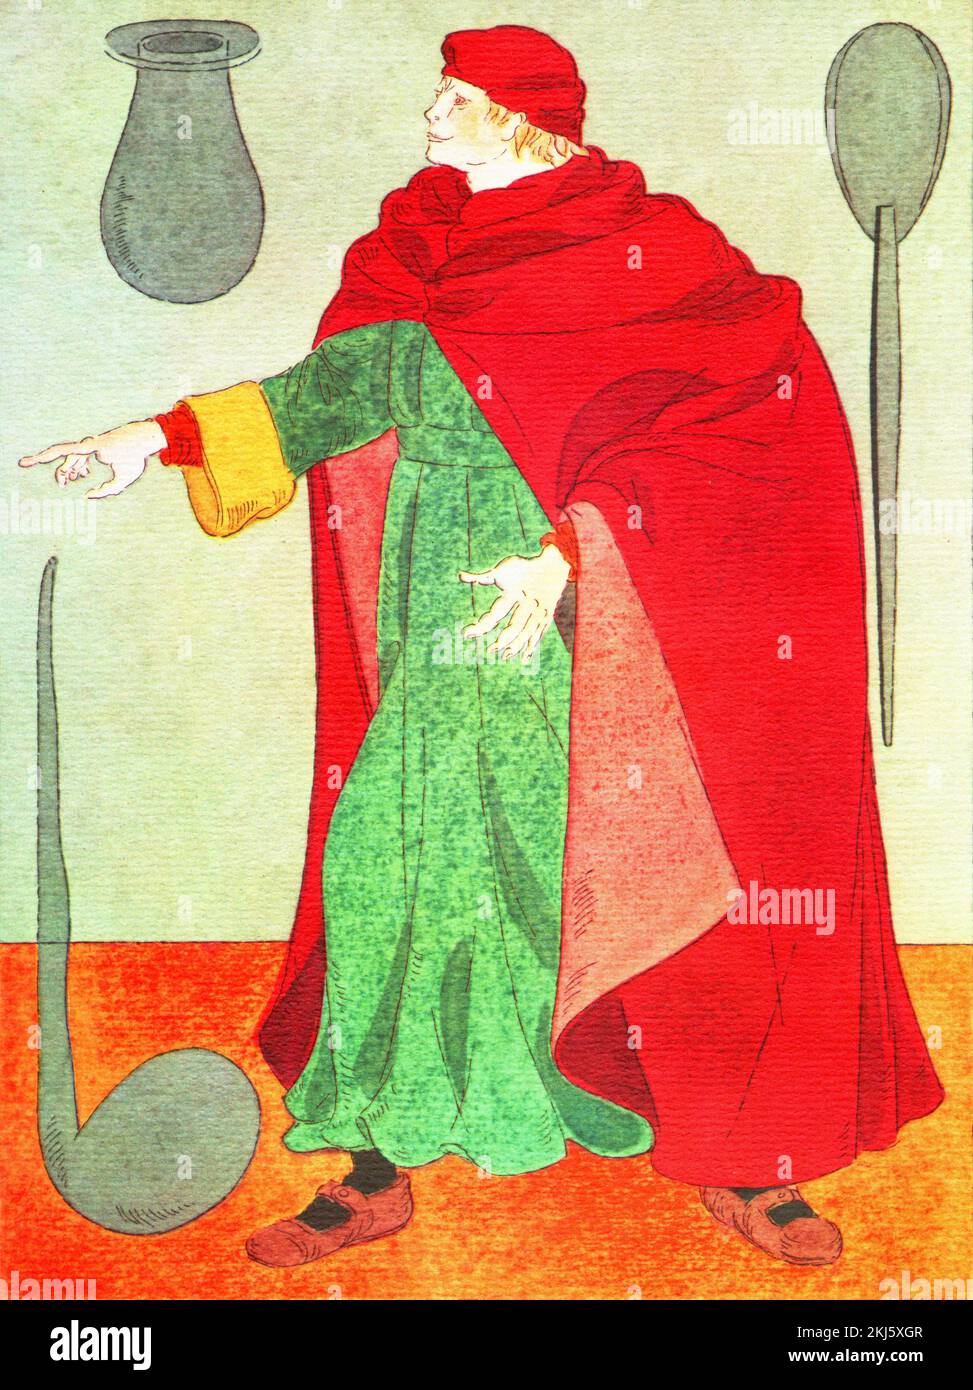 Un apothicaire dans le 15th siècle, Apothecary, terme archaïque pour un professionnel de la santé qui formule et distribue la médecine Banque D'Images